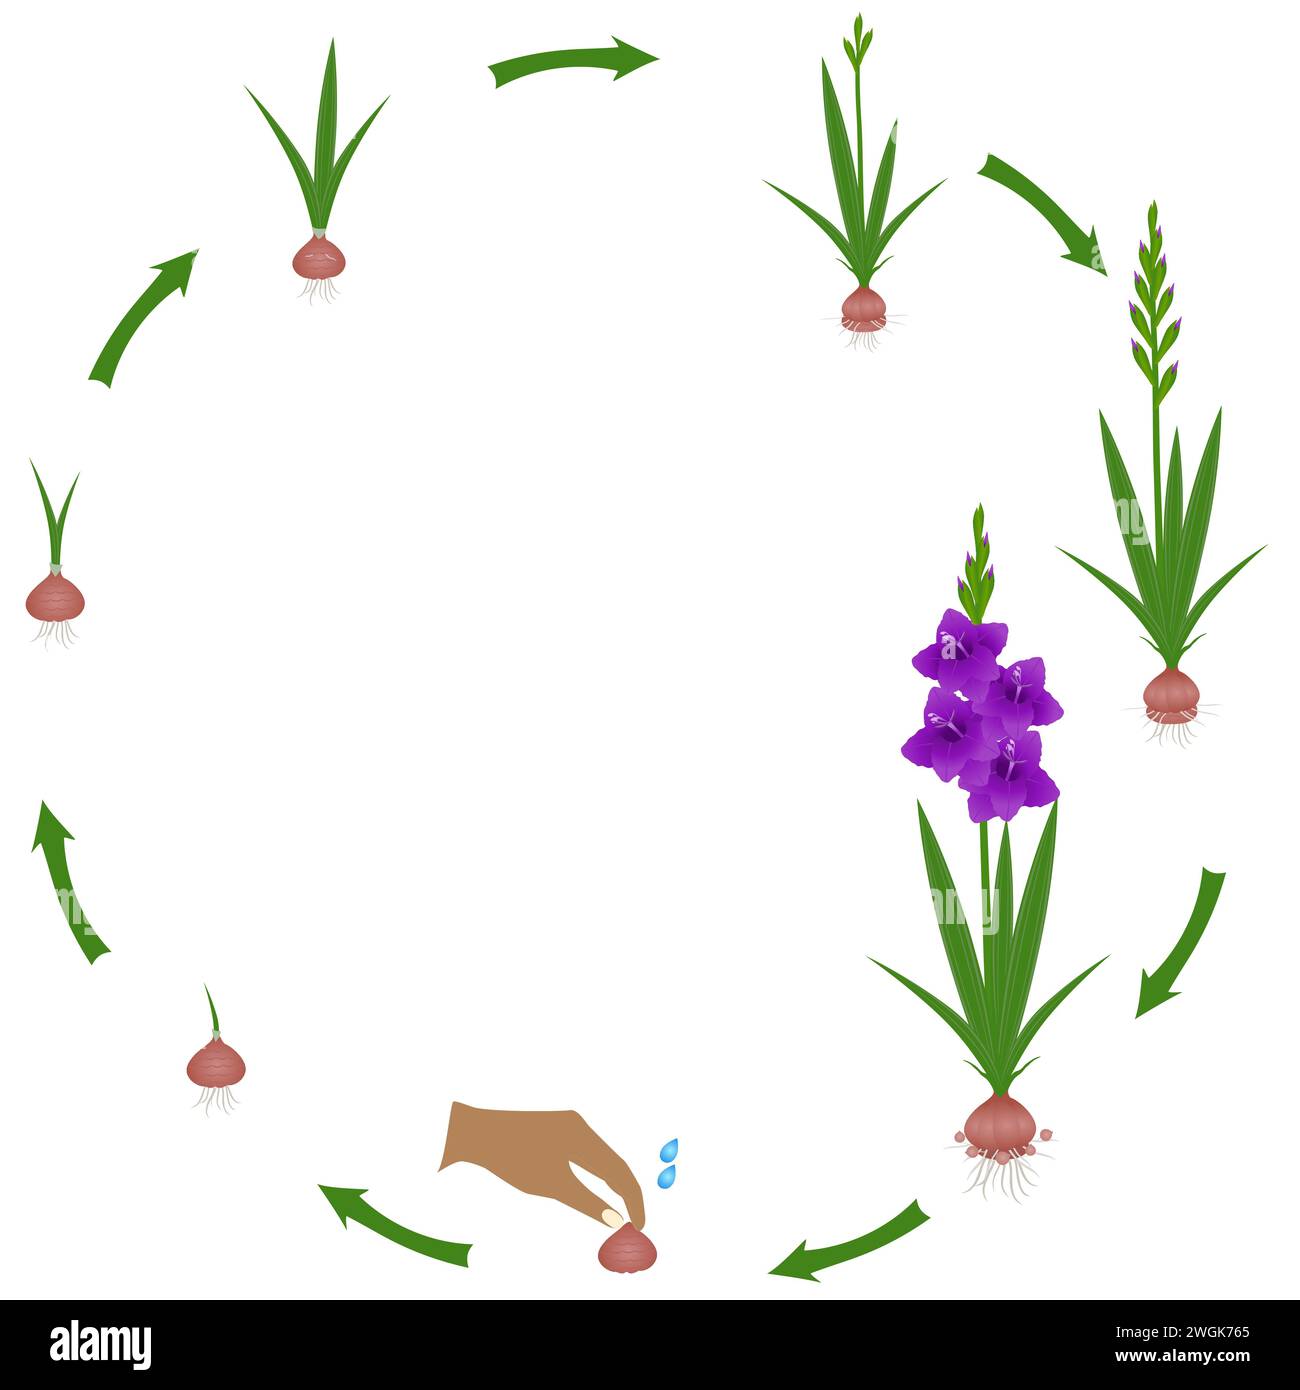 Cycle de vie d'une plante de gladiolus sur fond blanc. Illustration de Vecteur